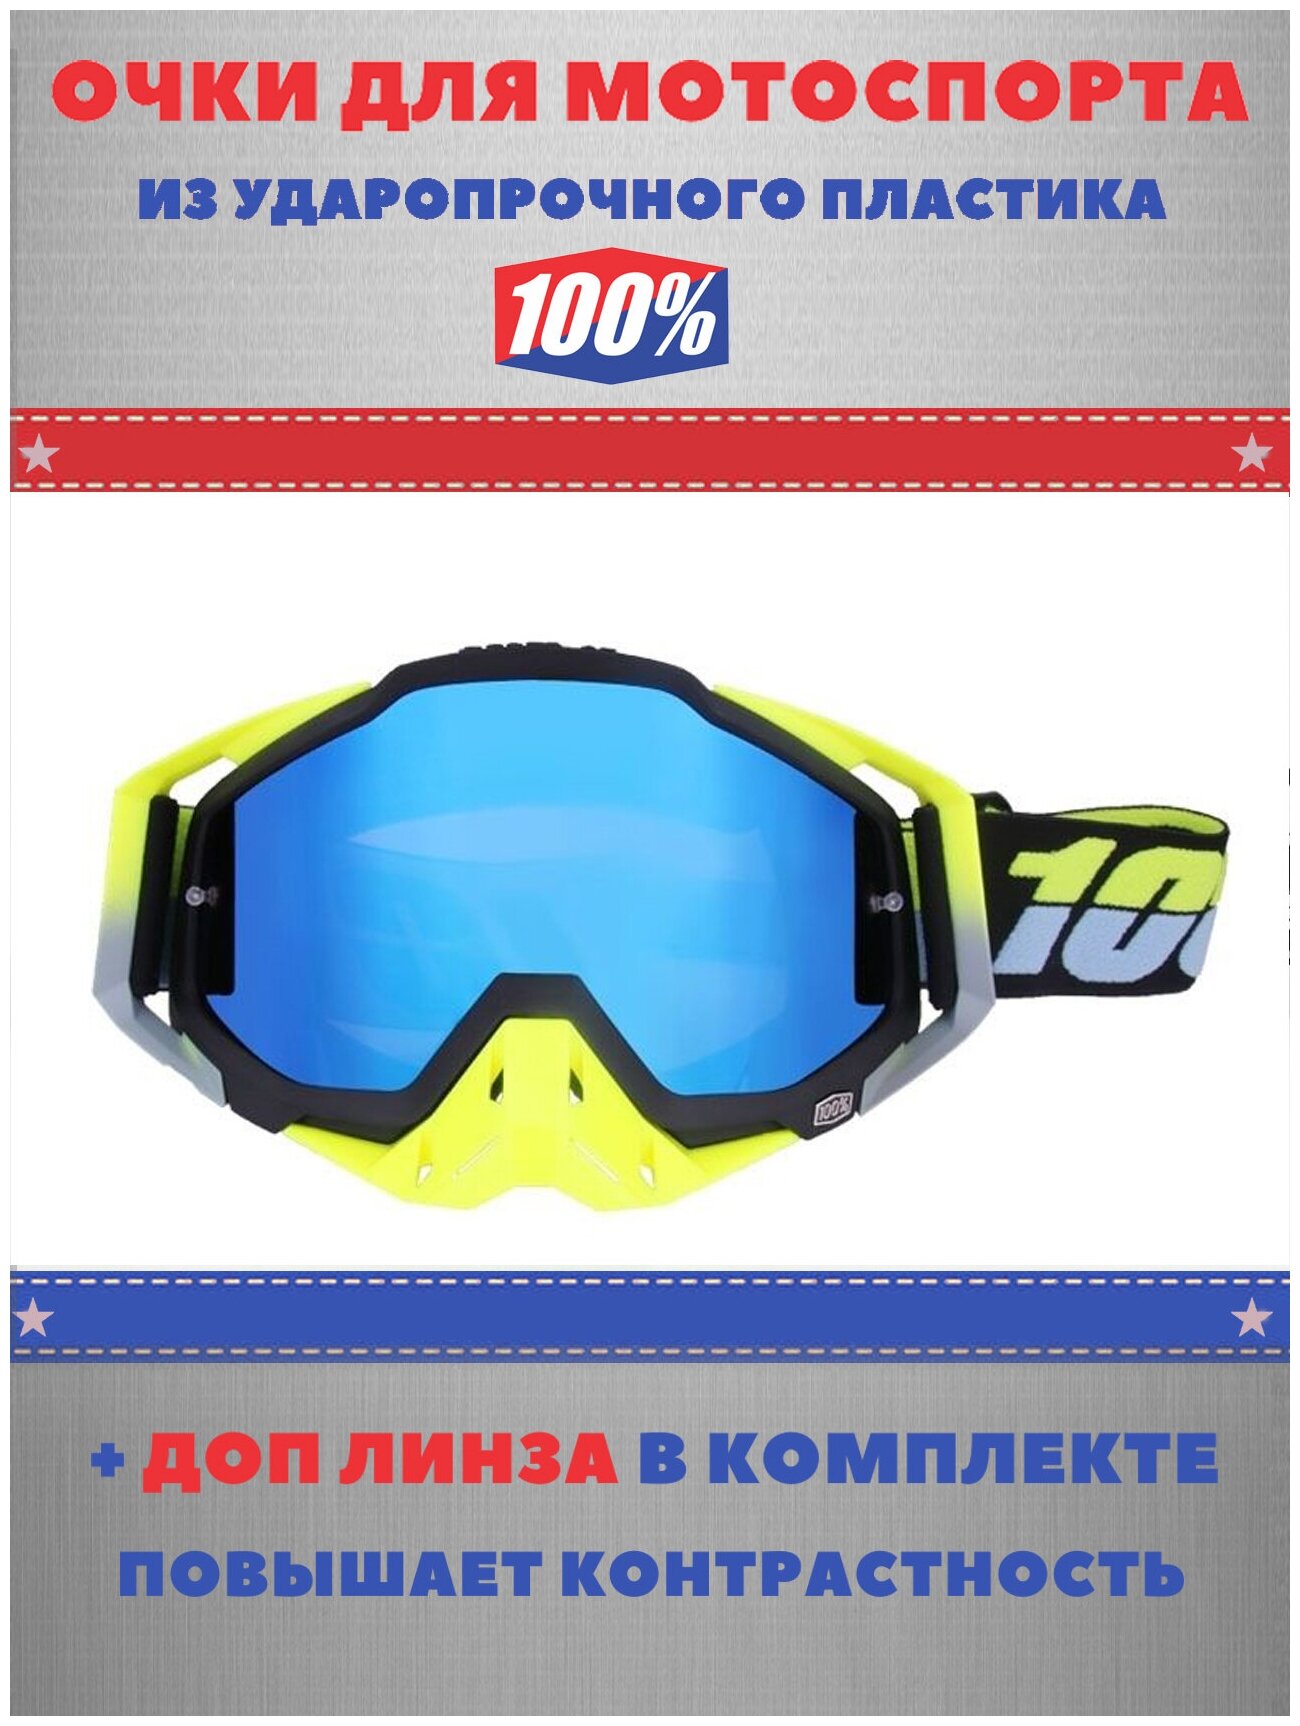 Кроссовые очки (маска) MX 100% для мотокросса, эндуро, питбайка, ATV сине-желтые